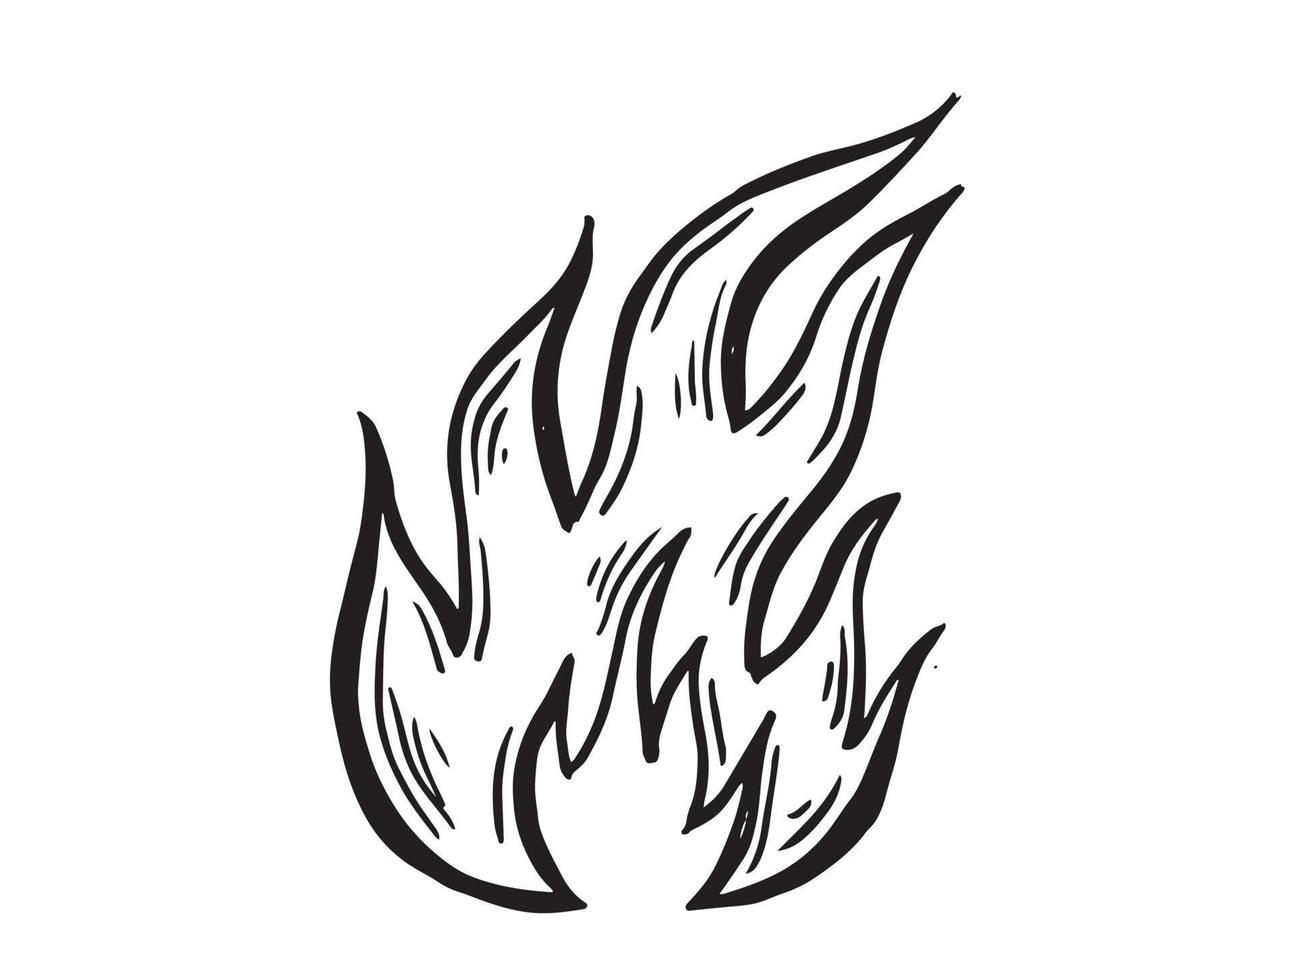 lagerfeuer, handgezeichnete illustration, flamme, brennend. vektor